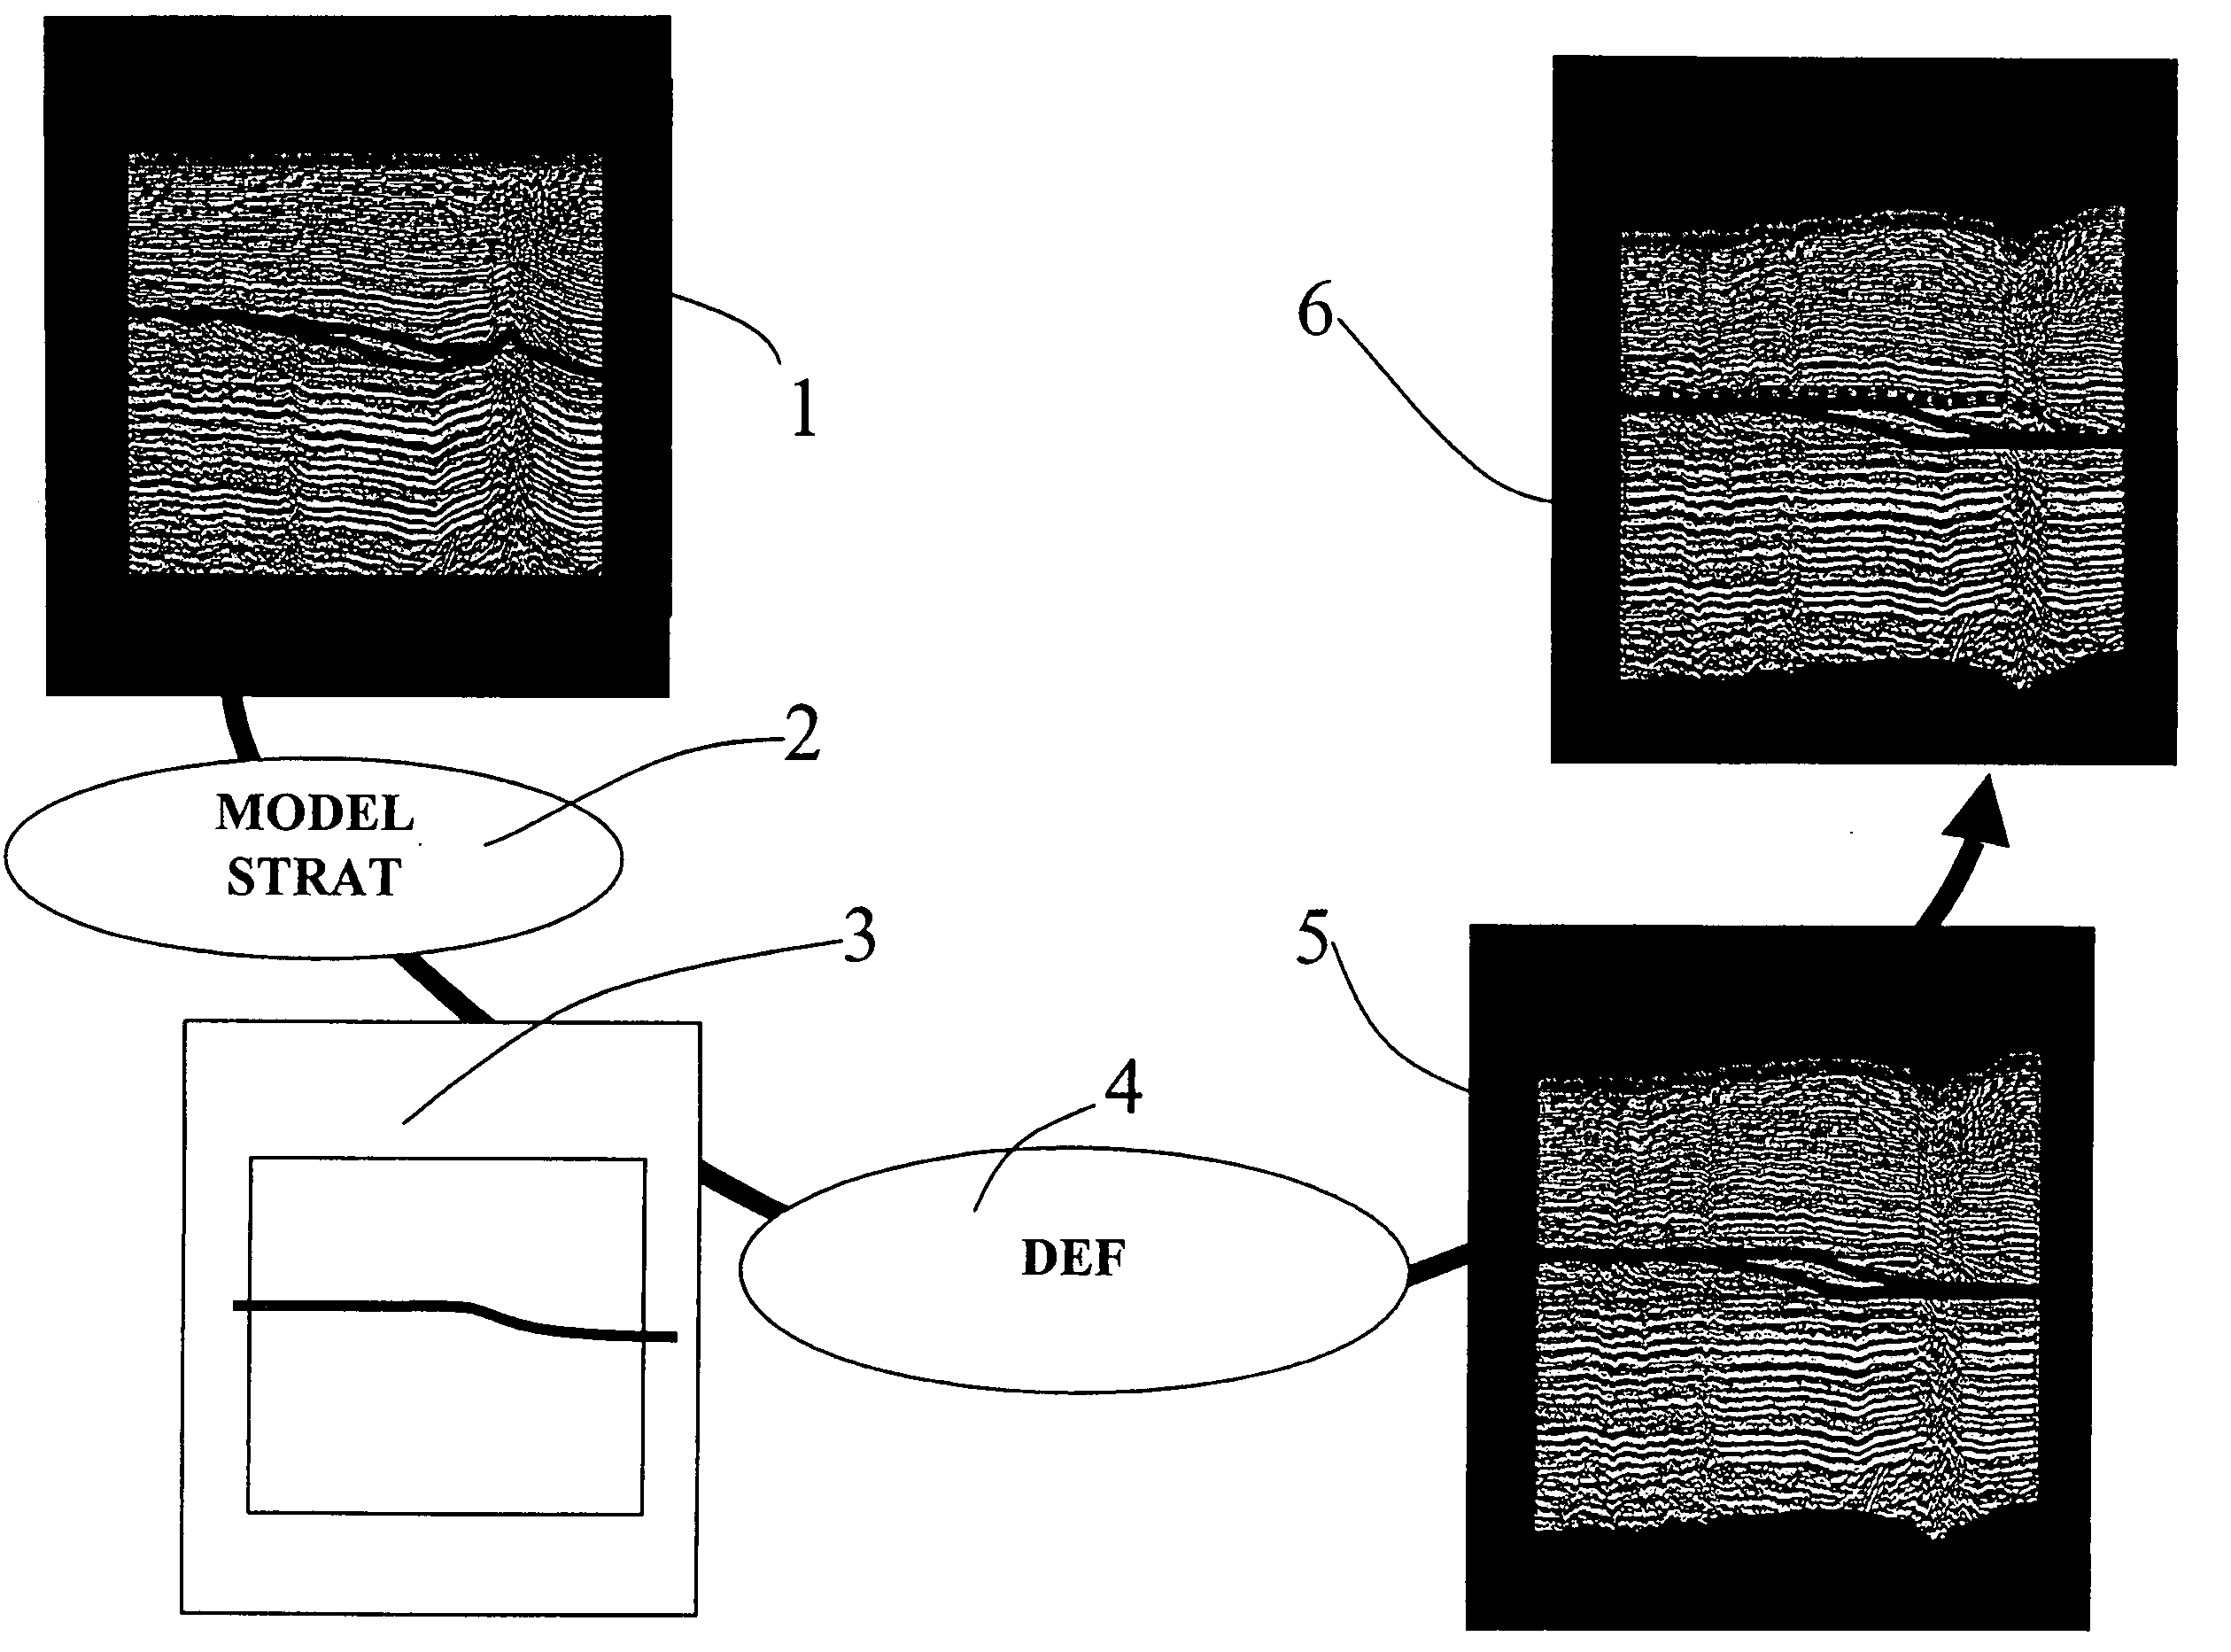 Seismic image deformation method for improved interpretation